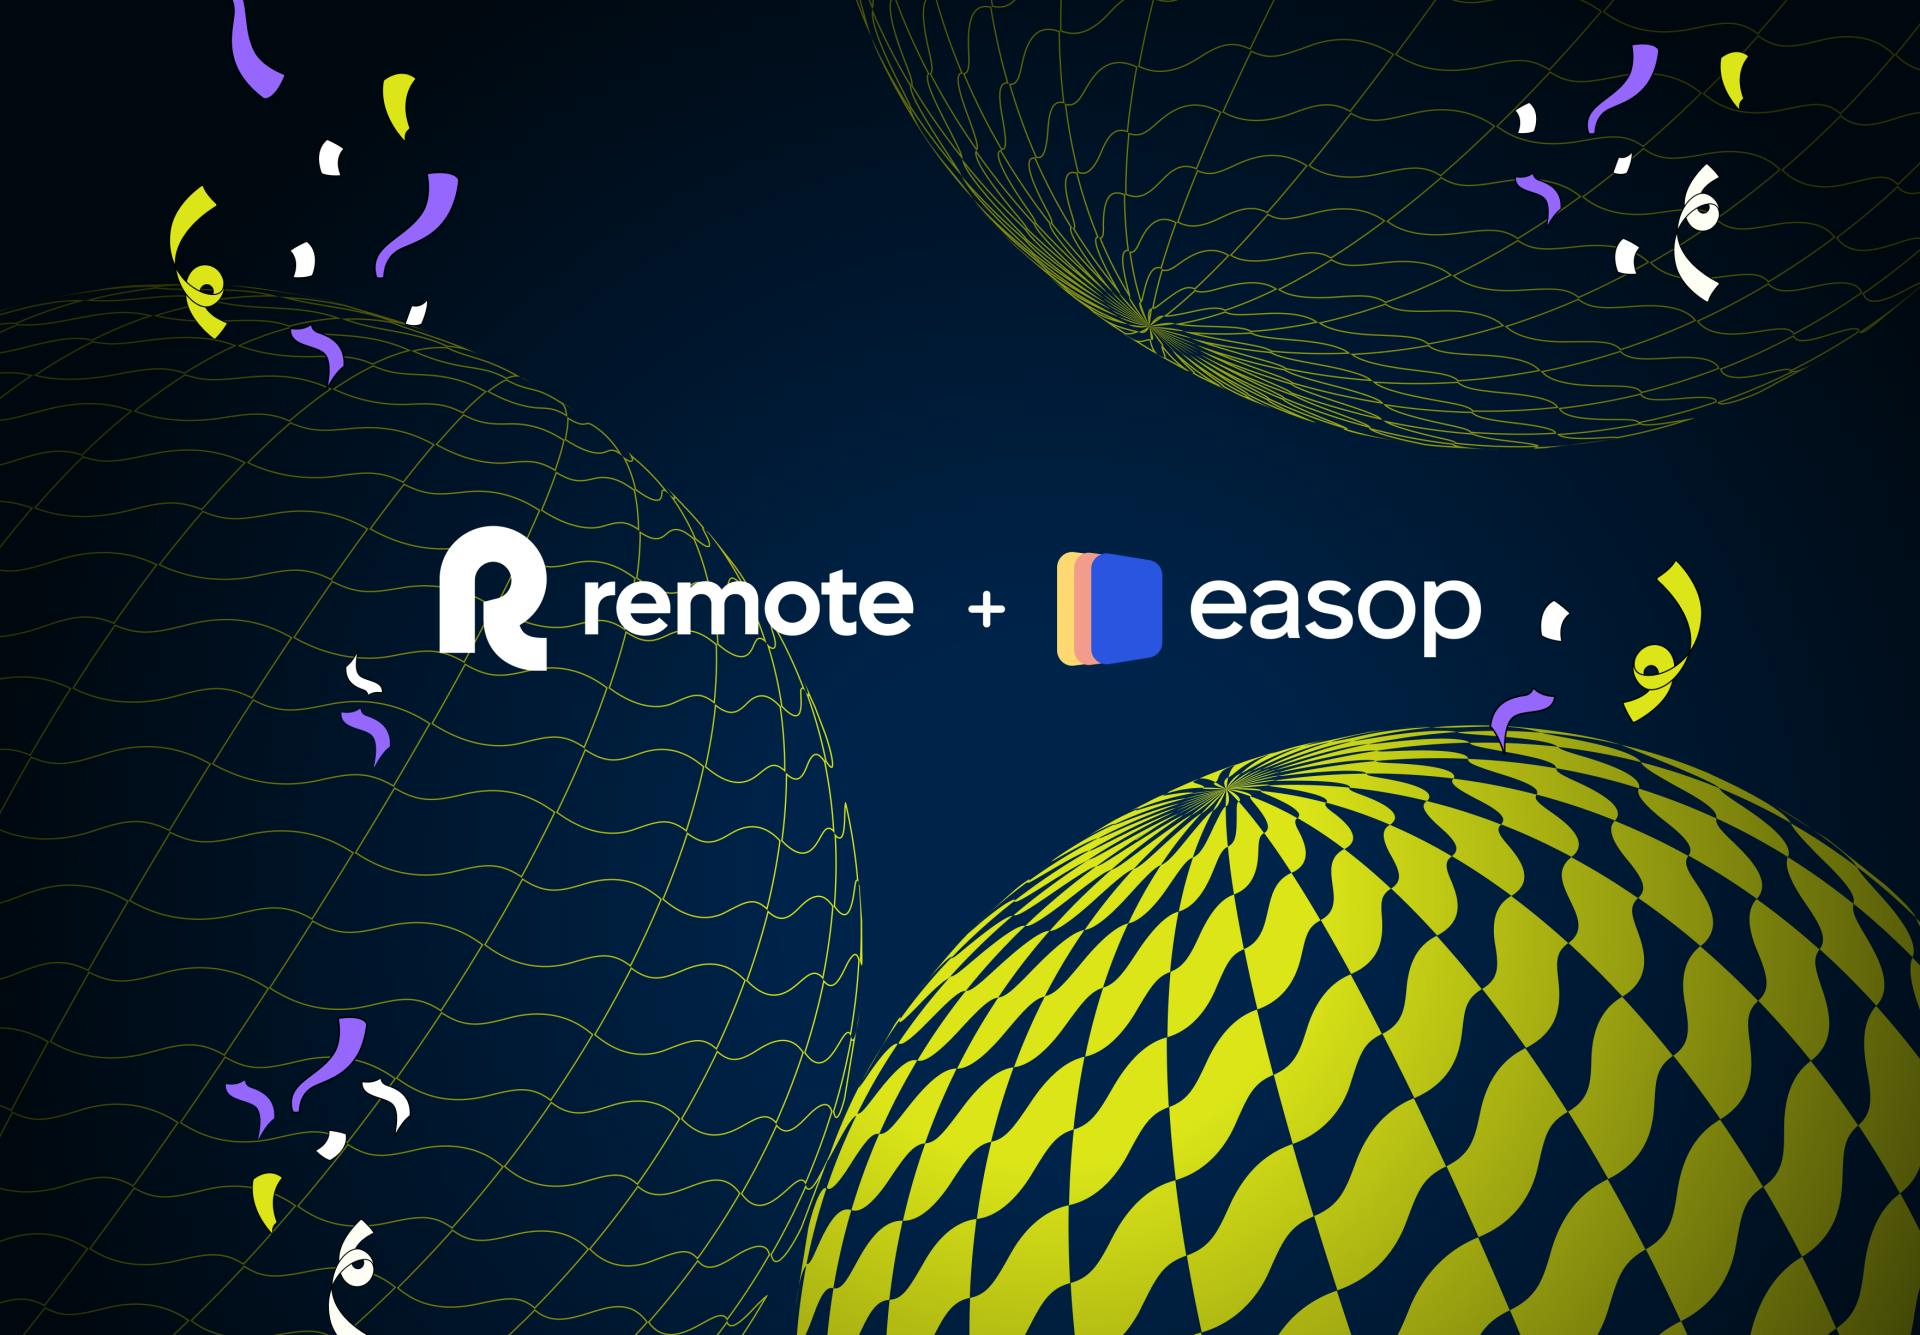 Remote Easop acquisition